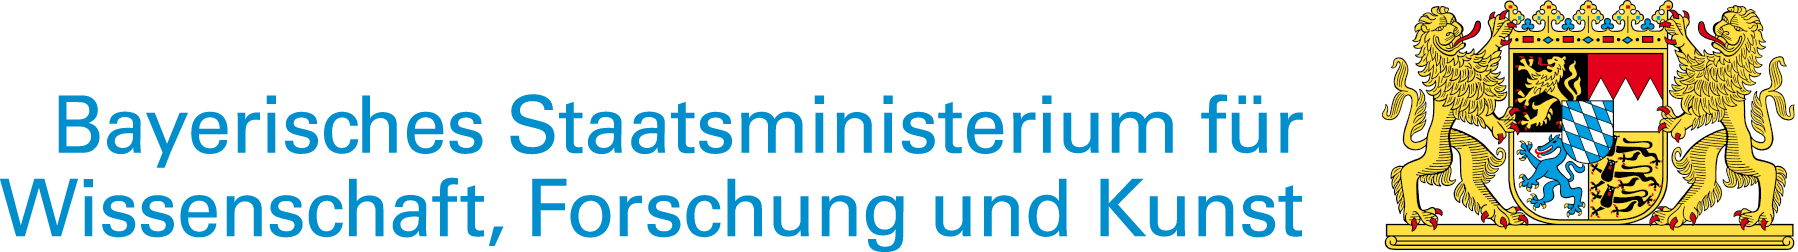  Bayerisches Staatsministerium für Wissenschaft, Forschung und Kunst 